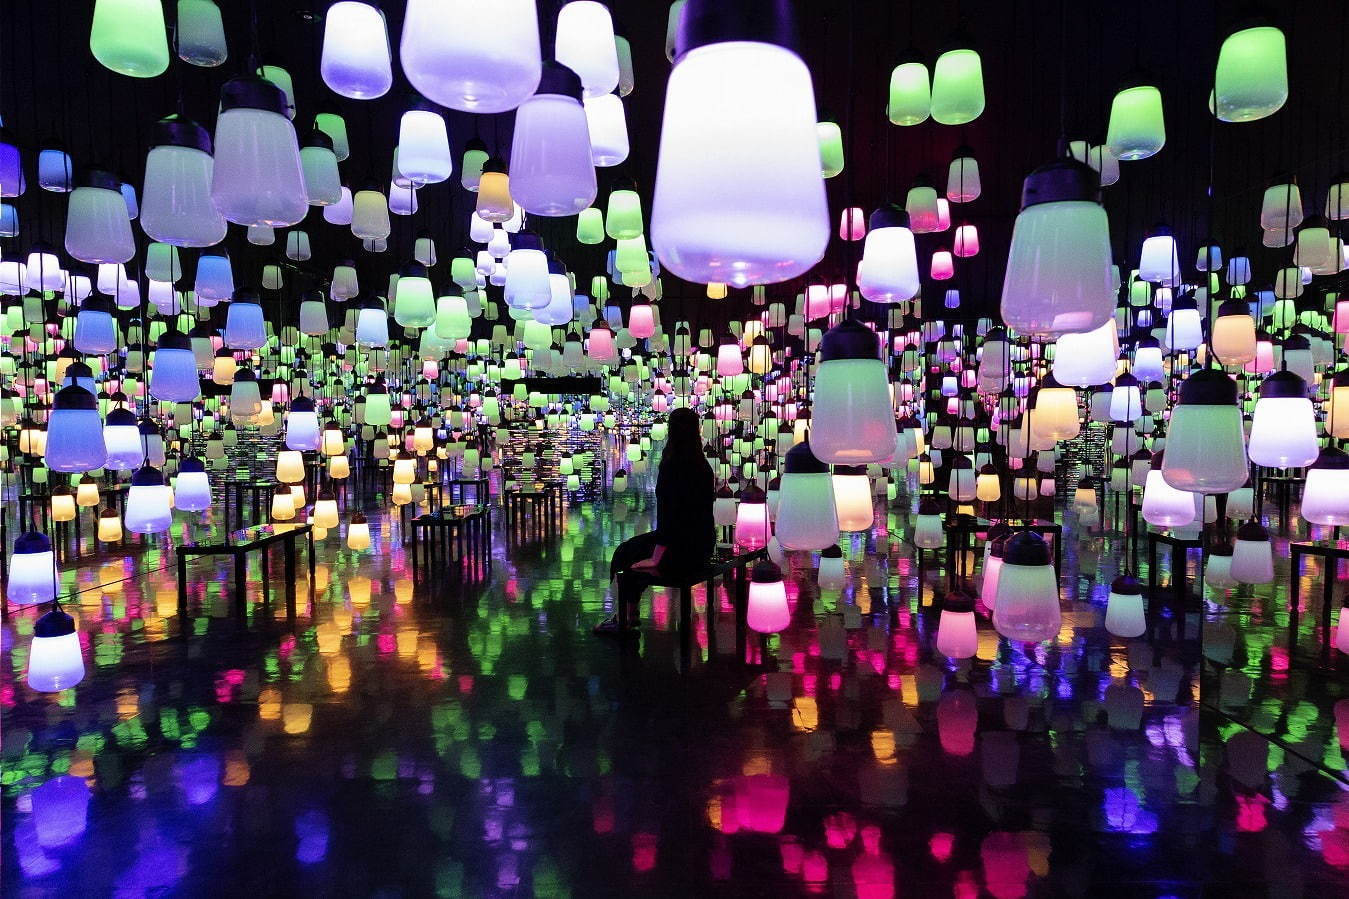 『森の中の、呼応するランプの森とスパイラル - ワンストローク、夏の森 / Forest and Spiral of Resonating Lamps in the Forest - One Stroke, Summer Forest』
teamLab, 2018, Interactive Installation, Murano Glass, LED, Endless, Sound: Hideaki Takahashi